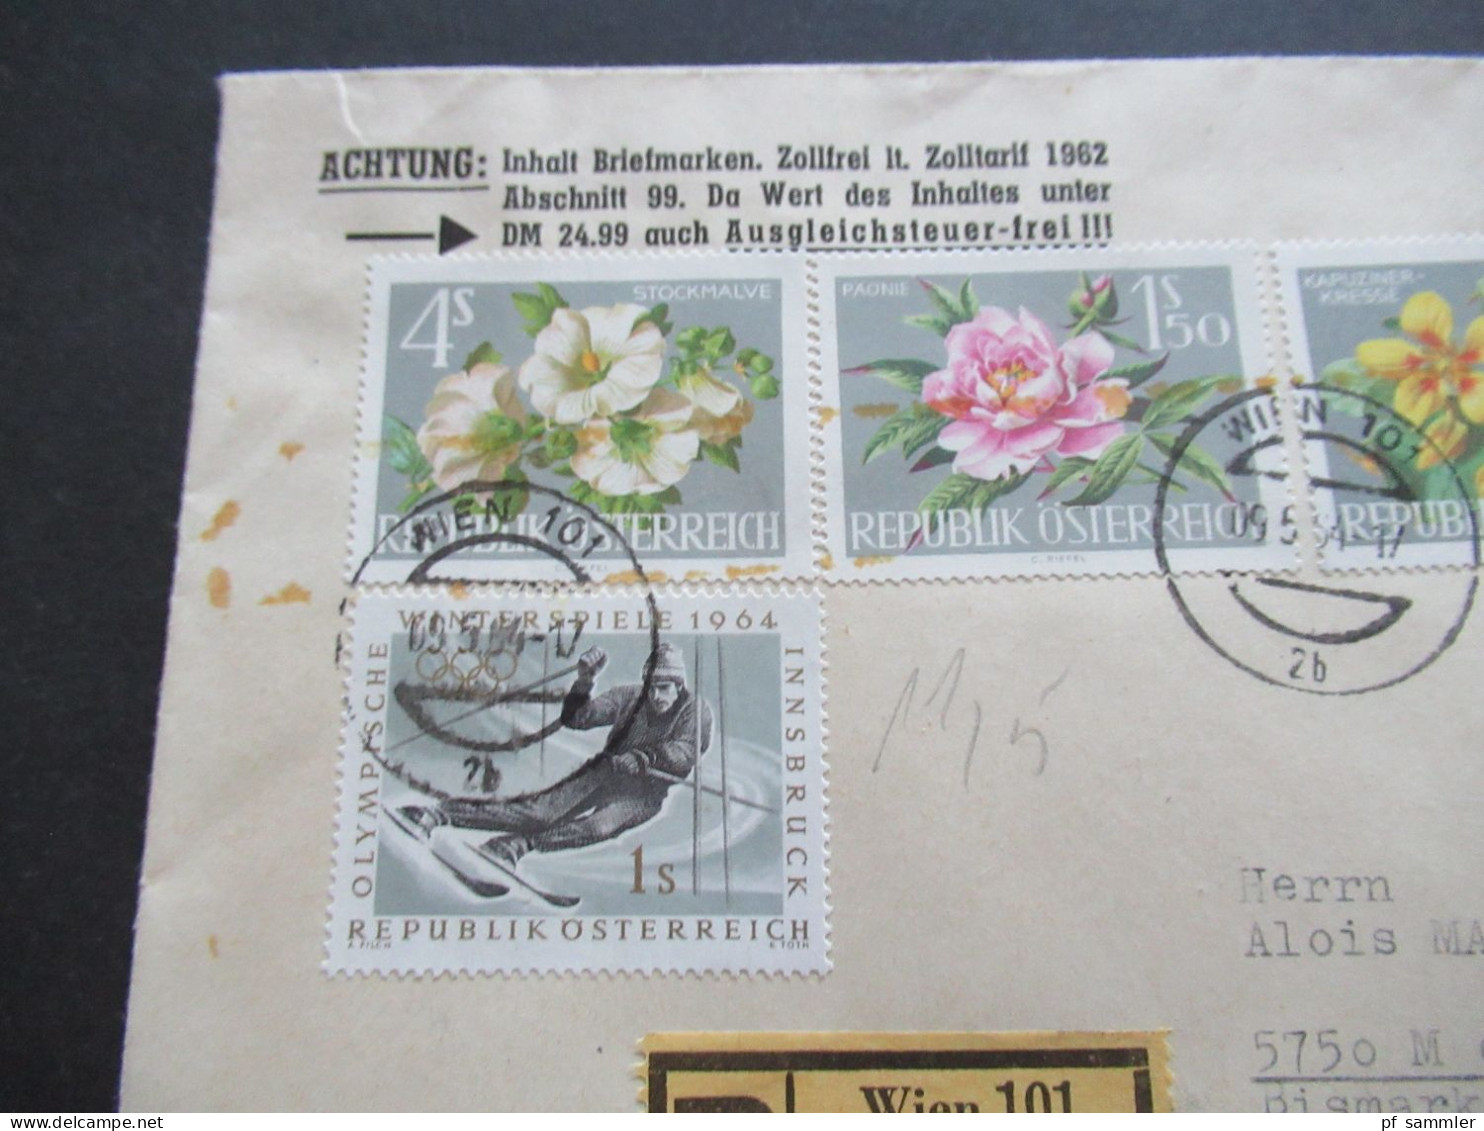 Österreich 1964 MiF Mit 4 Marken Einschreiben Wien 101 Auslandsbrief Nach Menden Sauerland / Inhalt Zollfrei Sabeff - Covers & Documents